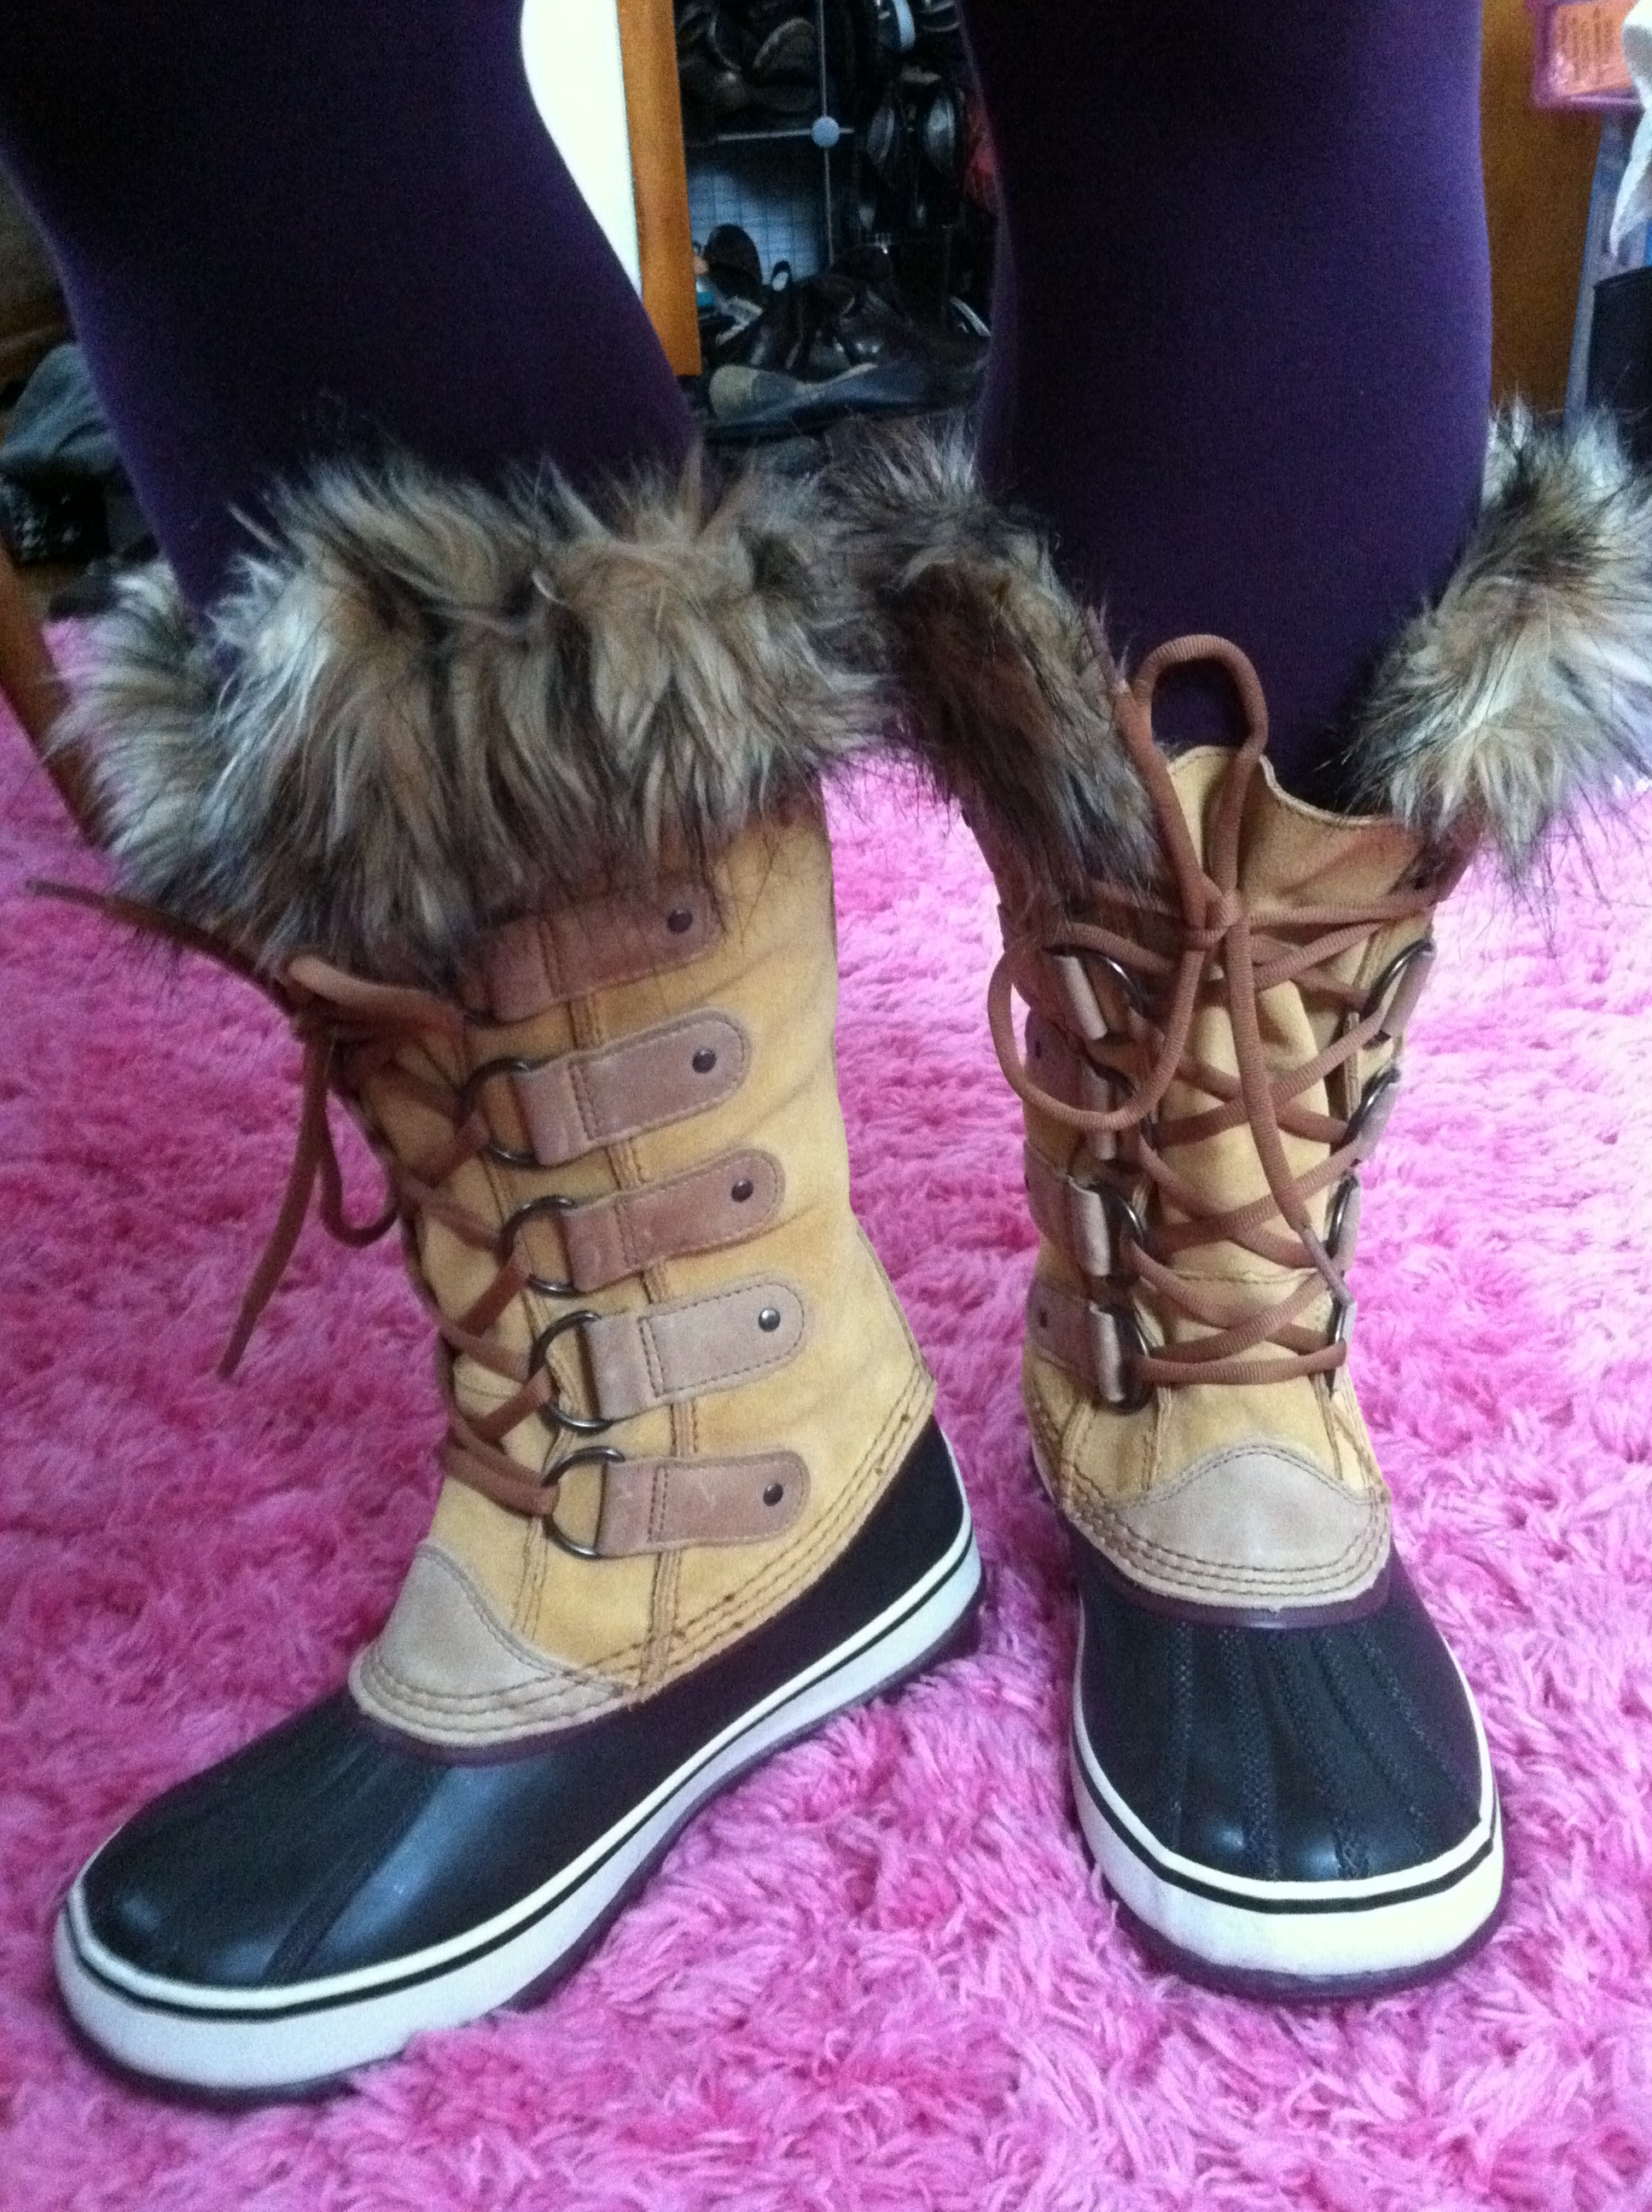 women's arctic boots